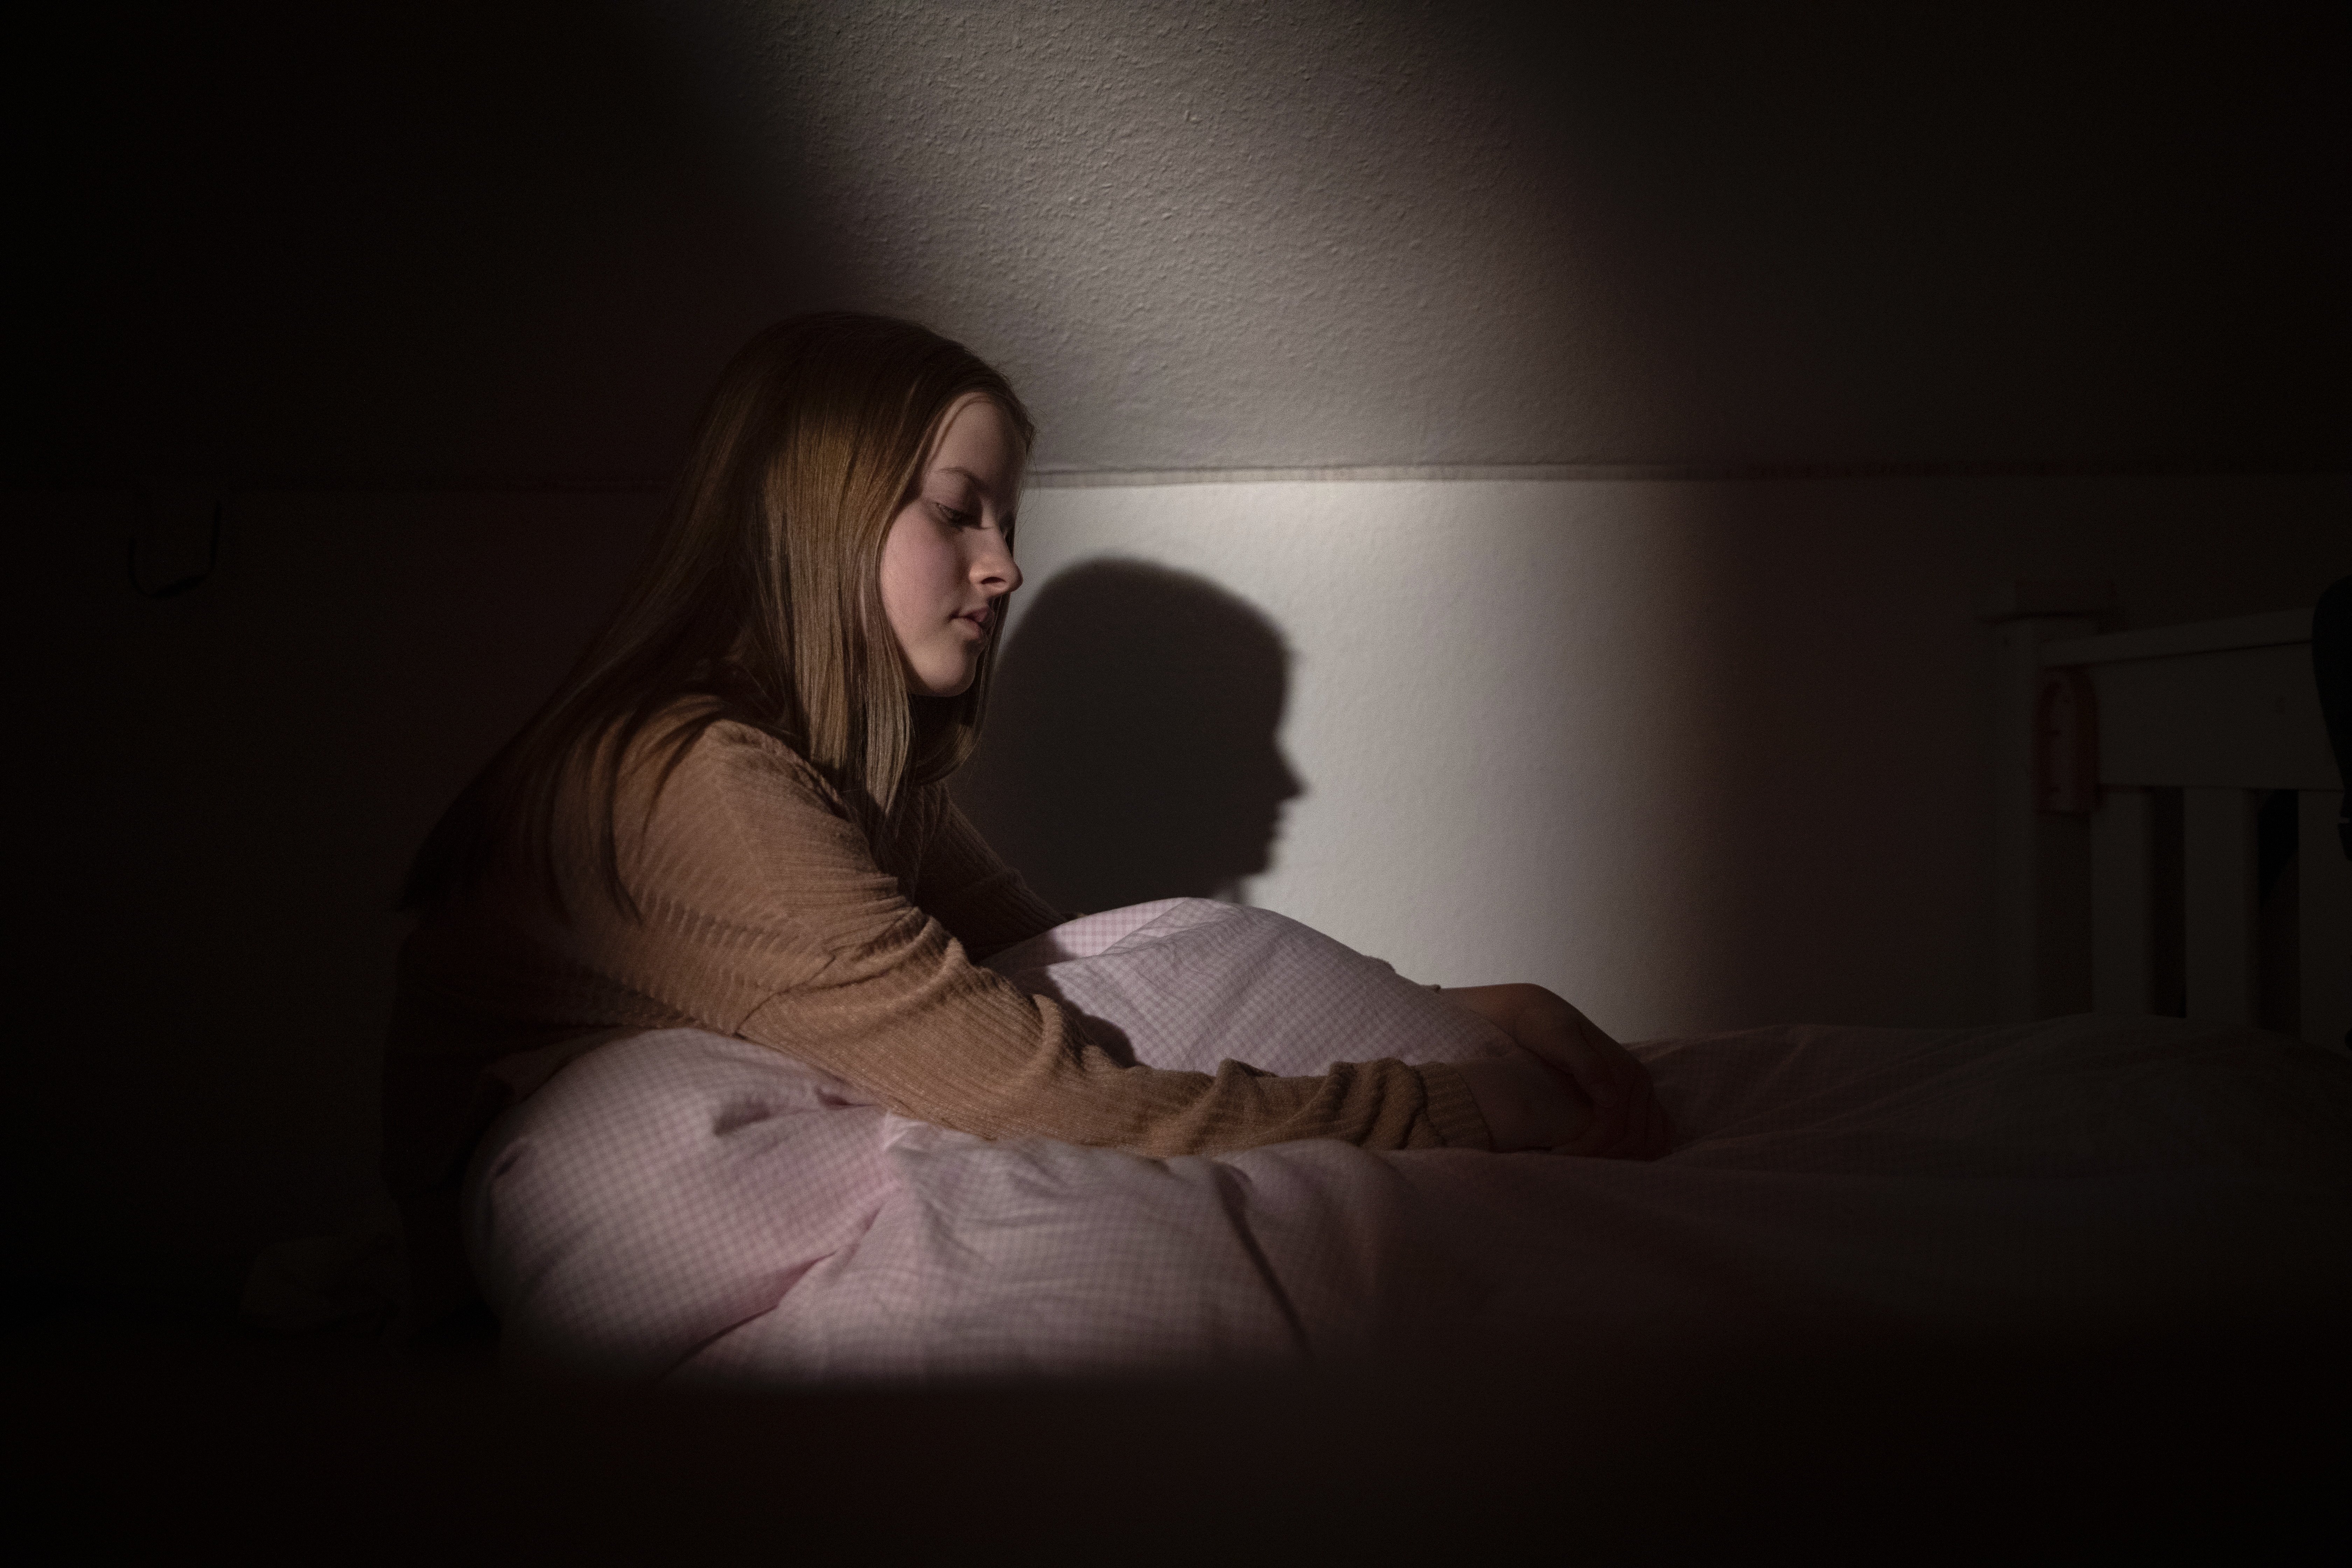 Adolescente assise dans son lit, la nuit, dans une lumière faible, avec une expression faciale décrivant le désespoir et la tristesse | Source : Getty Images